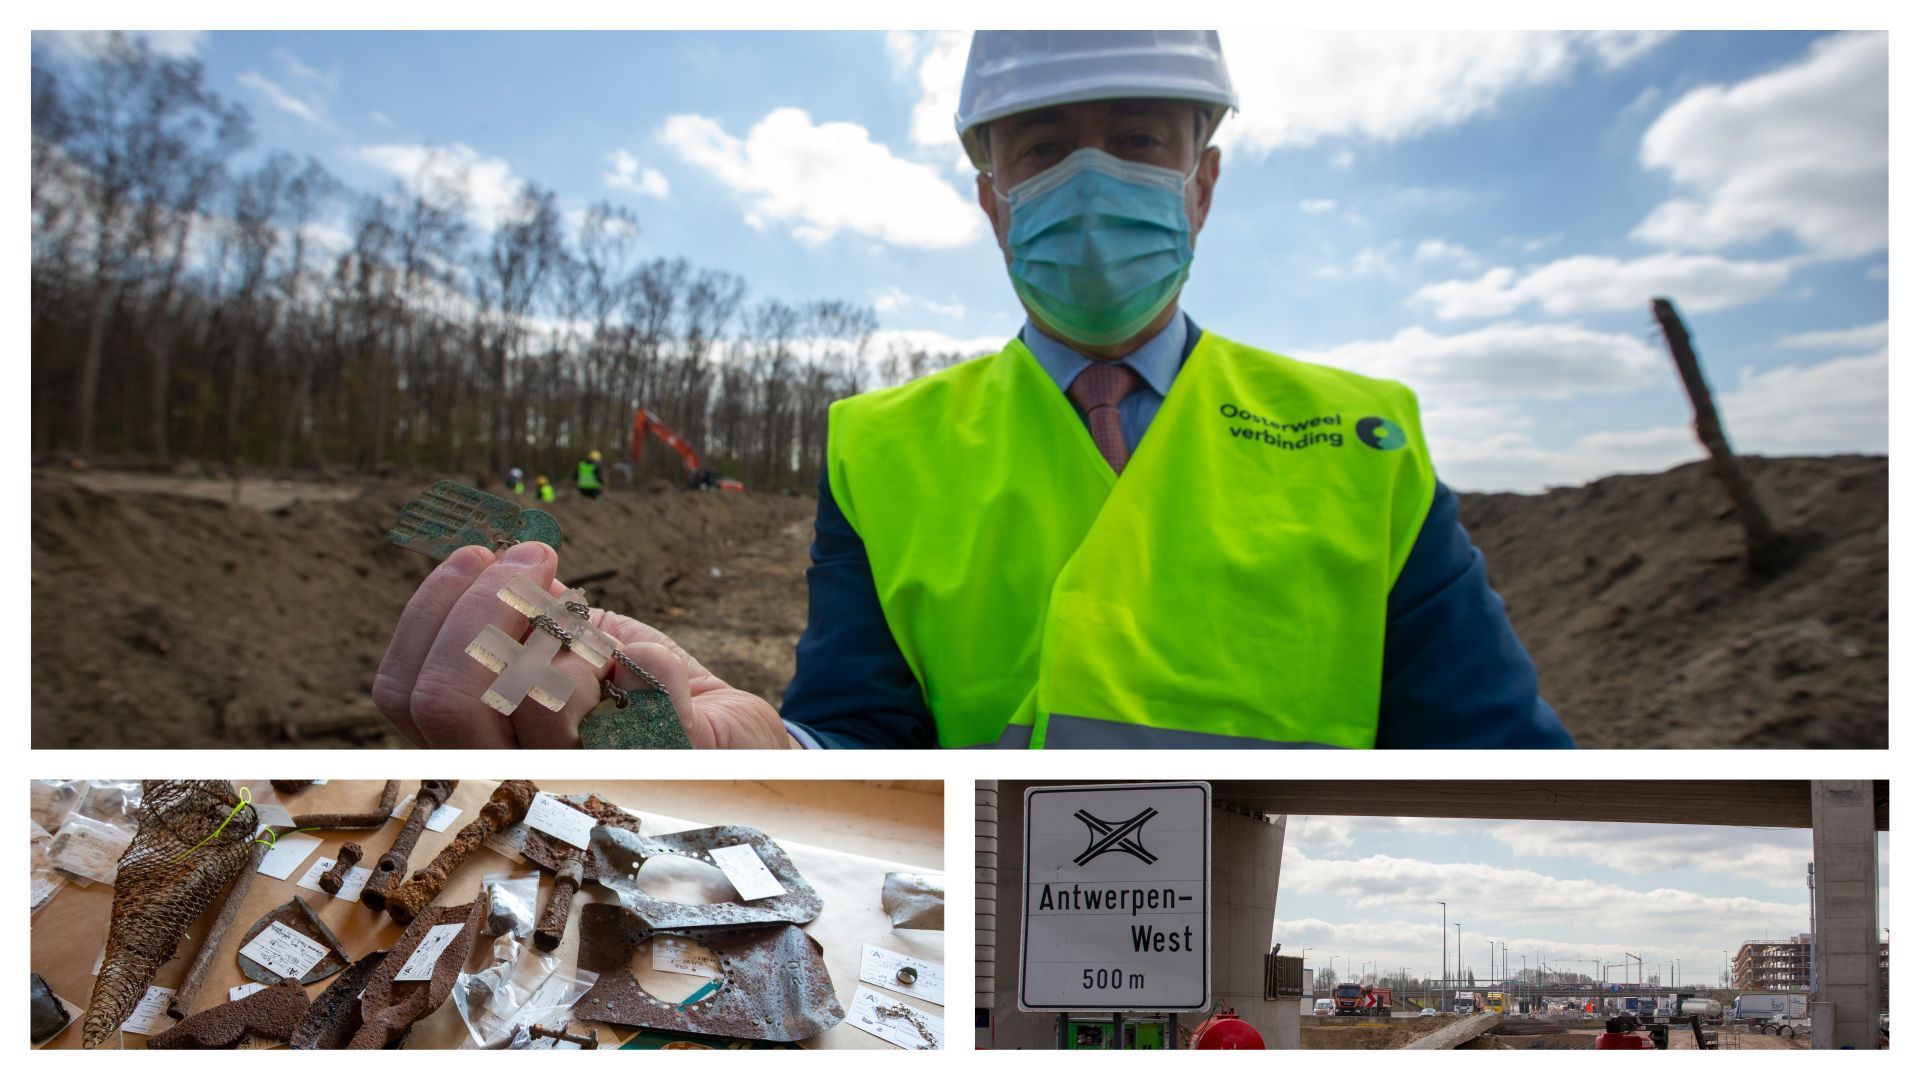 Bart De Wever présente une trouvaille découverte sur le chantier de l'Oosterweel, artefacts et image des travaux autoroutiers 